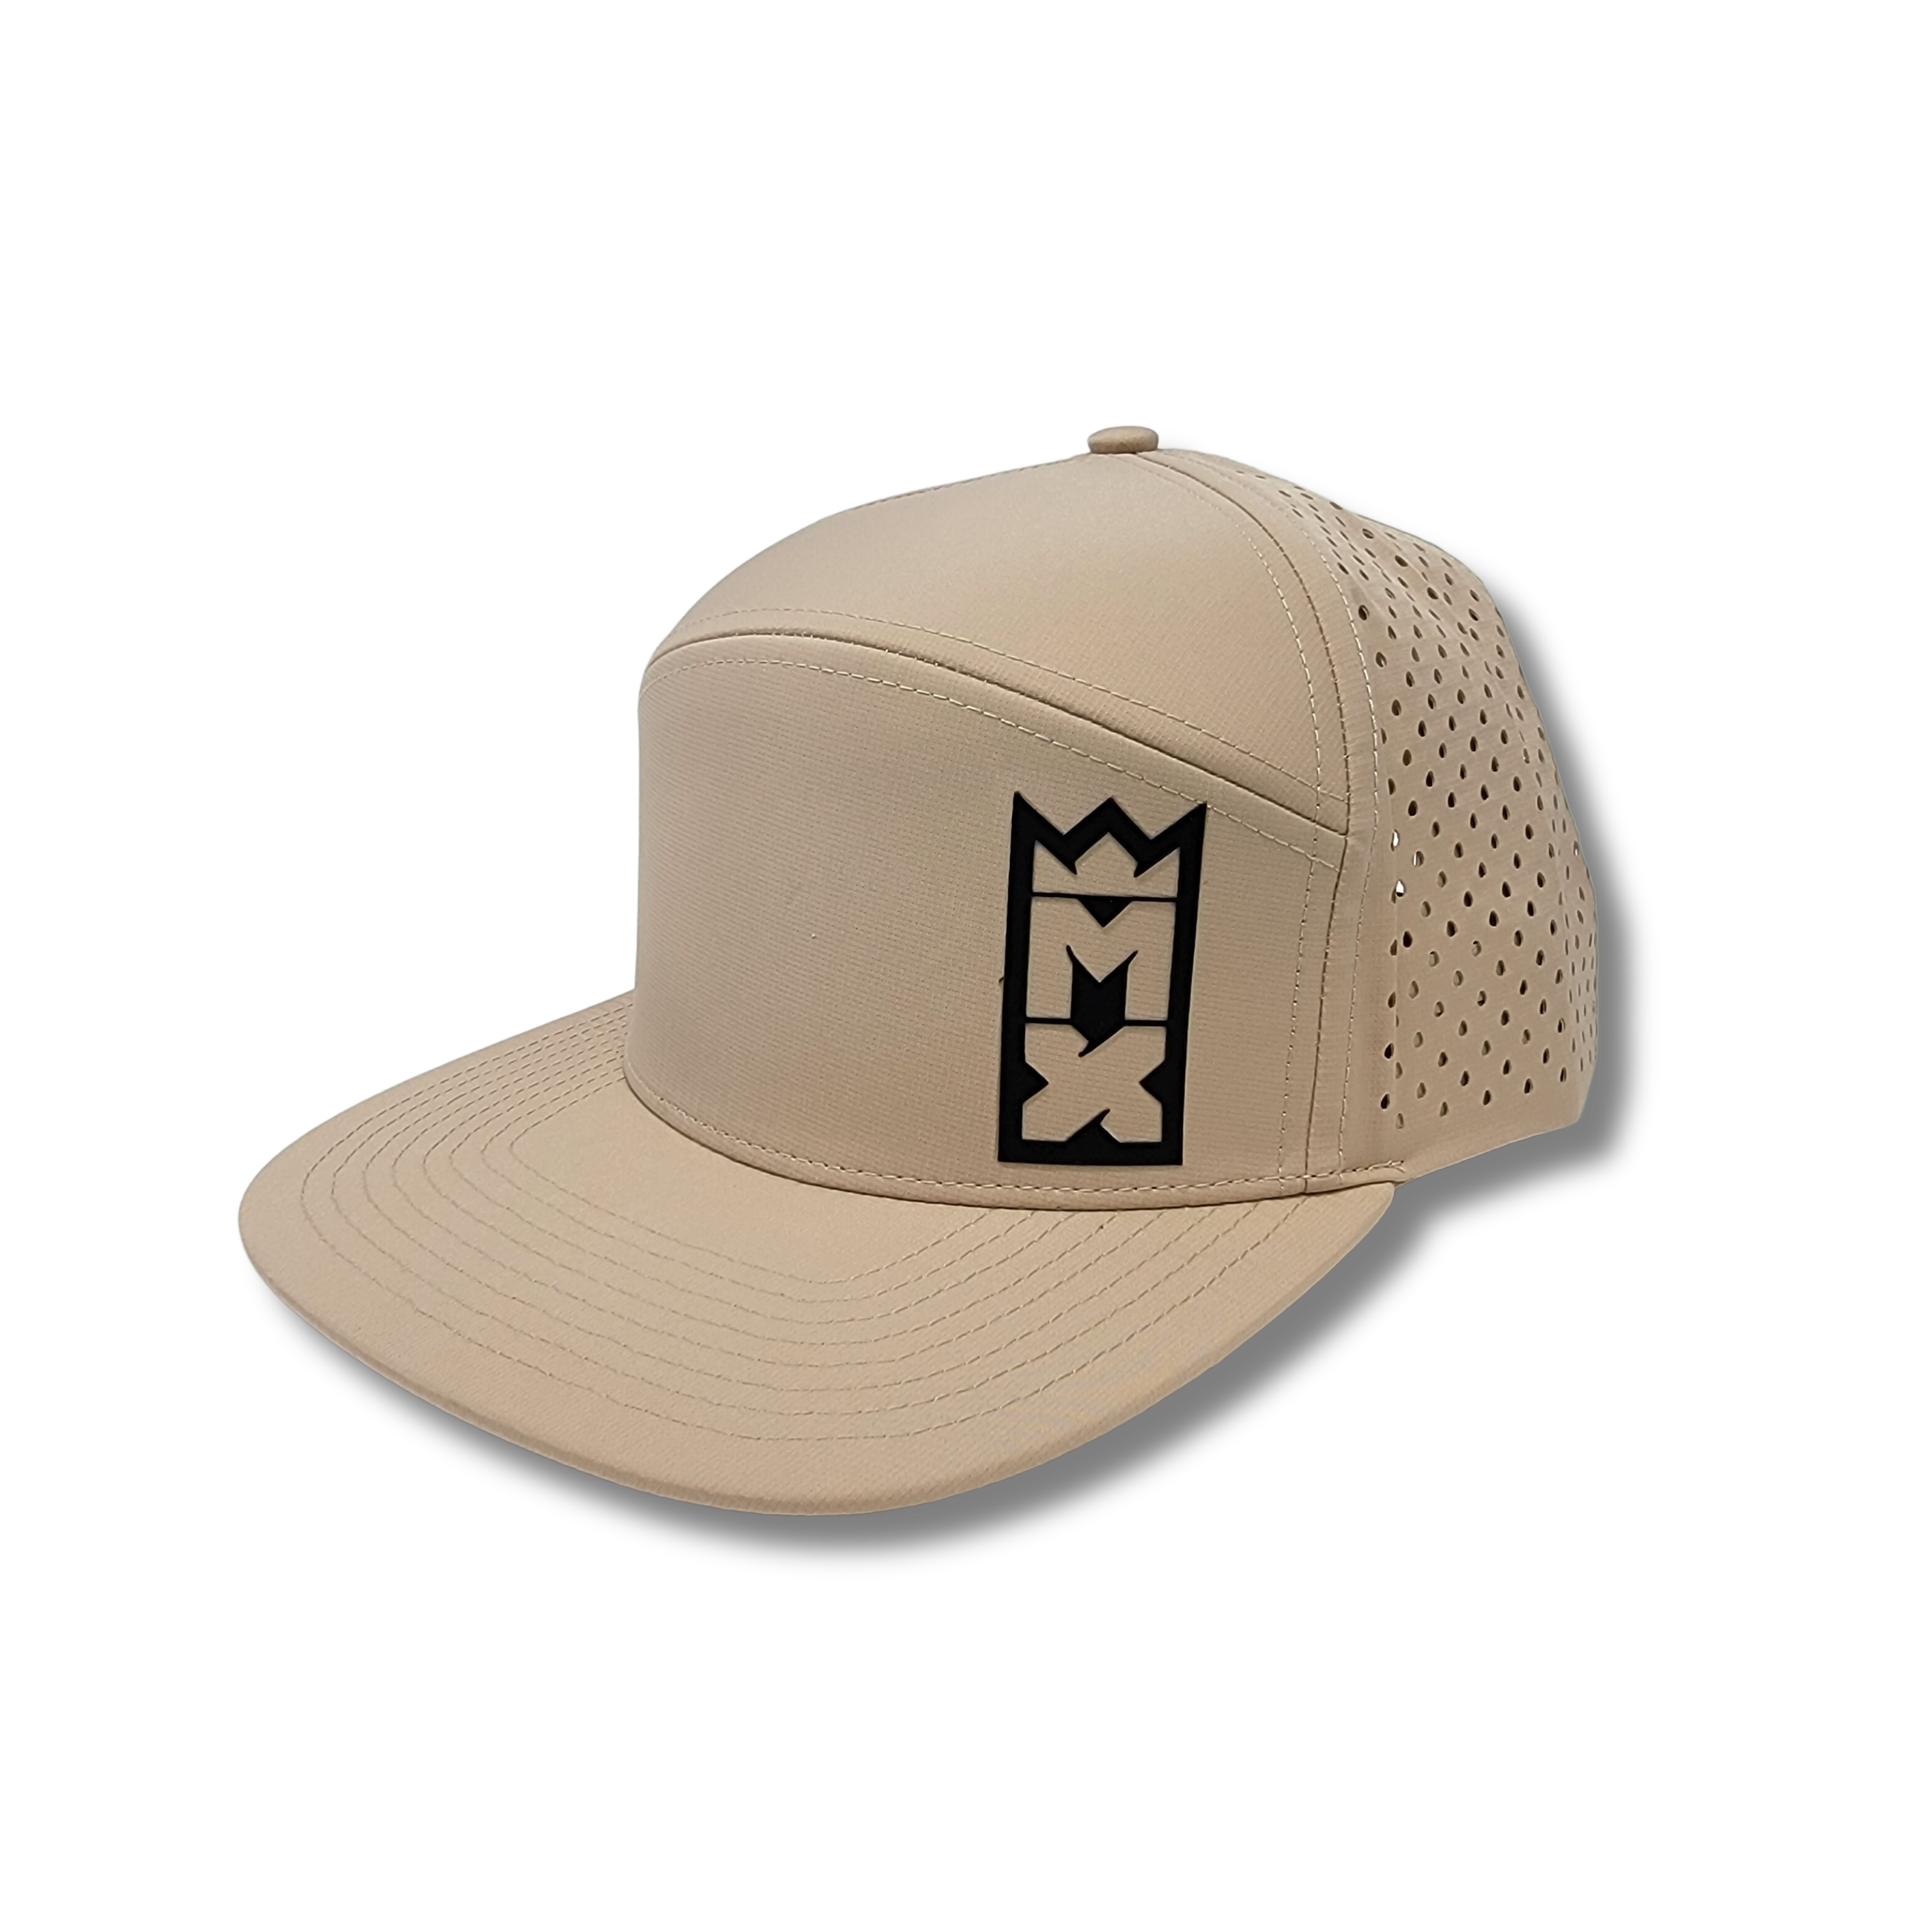 MX Hats